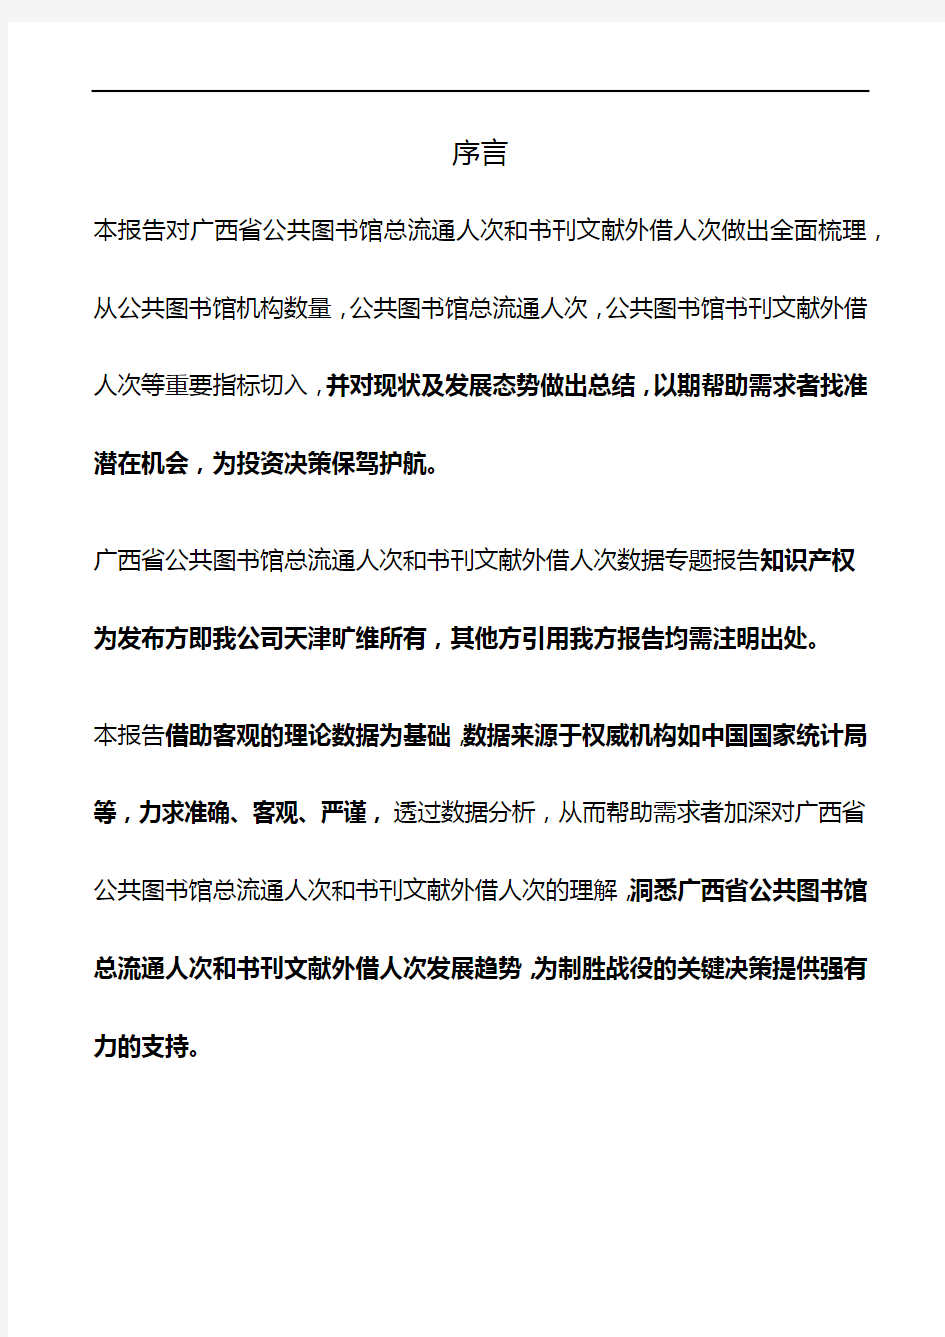 广西省公共图书馆总流通人次和书刊文献外借人次3年数据专题报告2019版